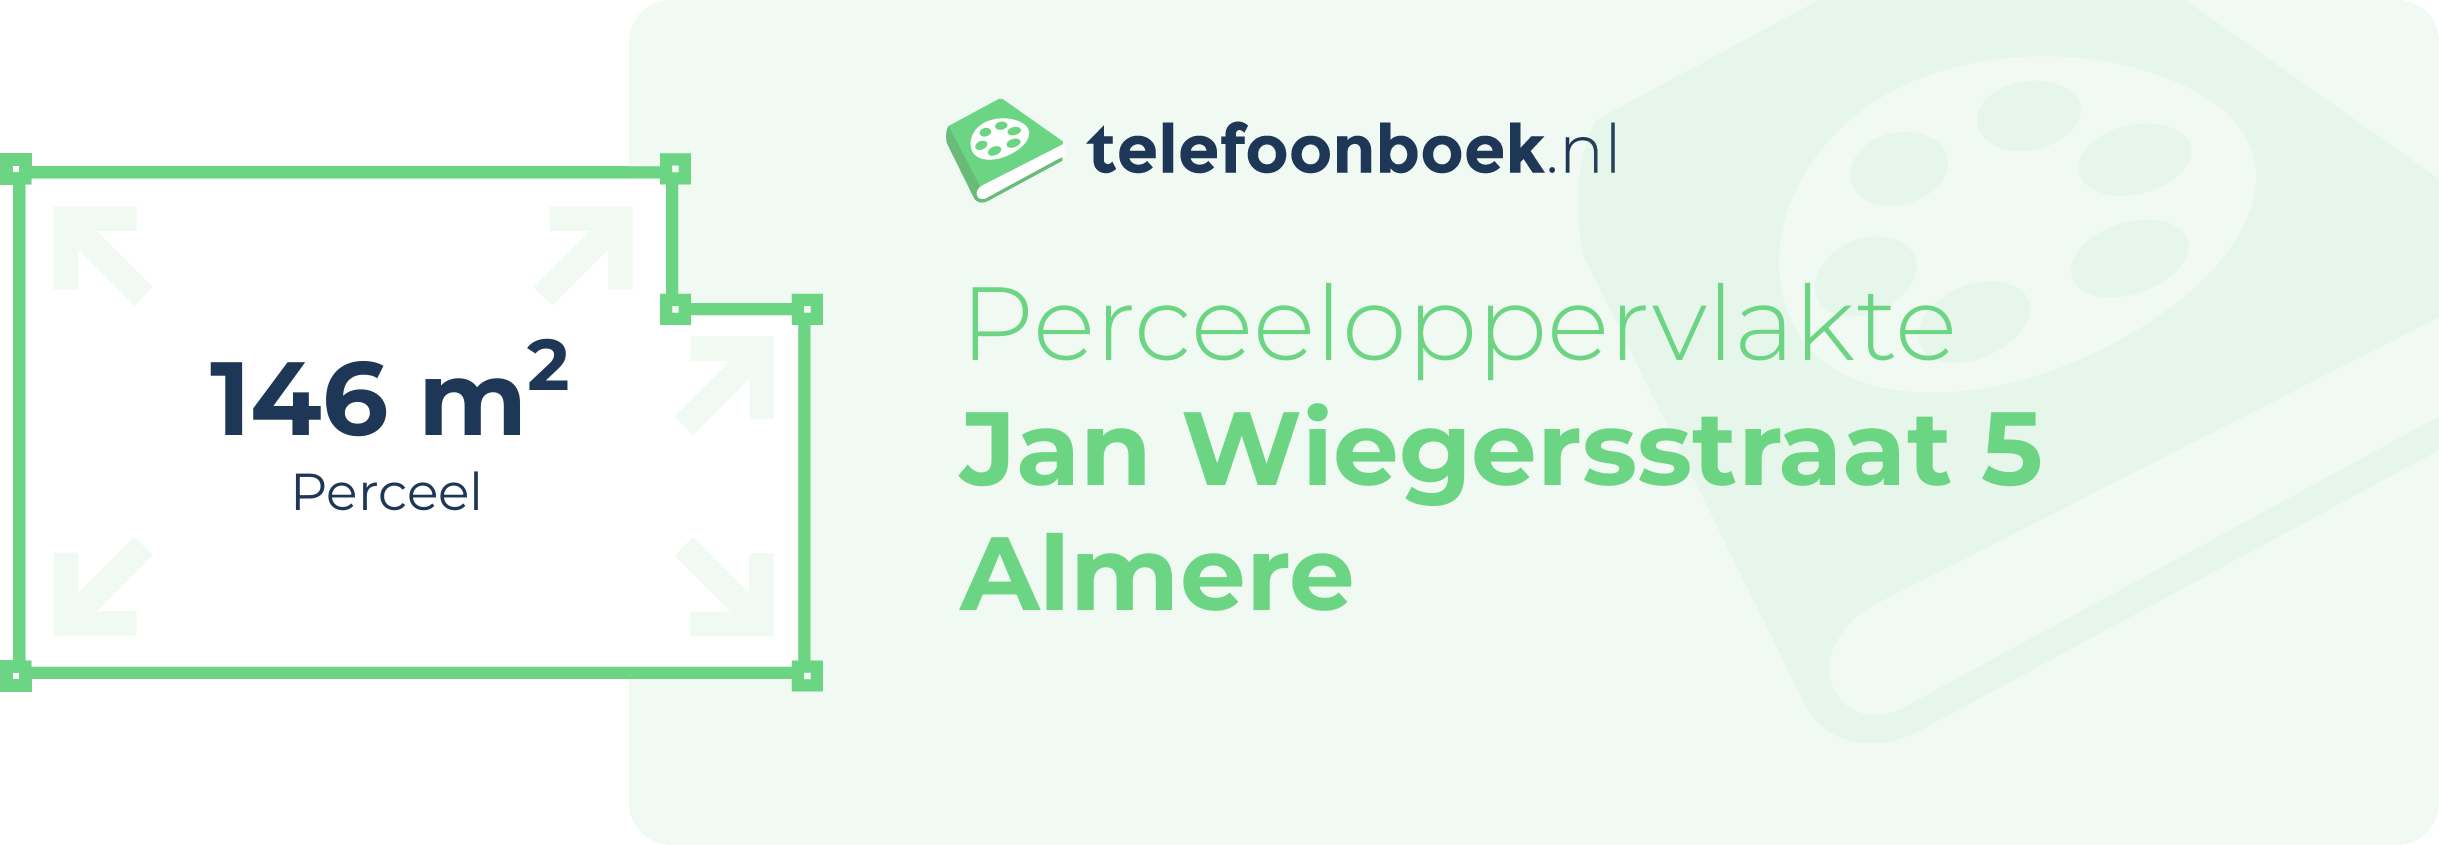 Perceeloppervlakte Jan Wiegersstraat 5 Almere